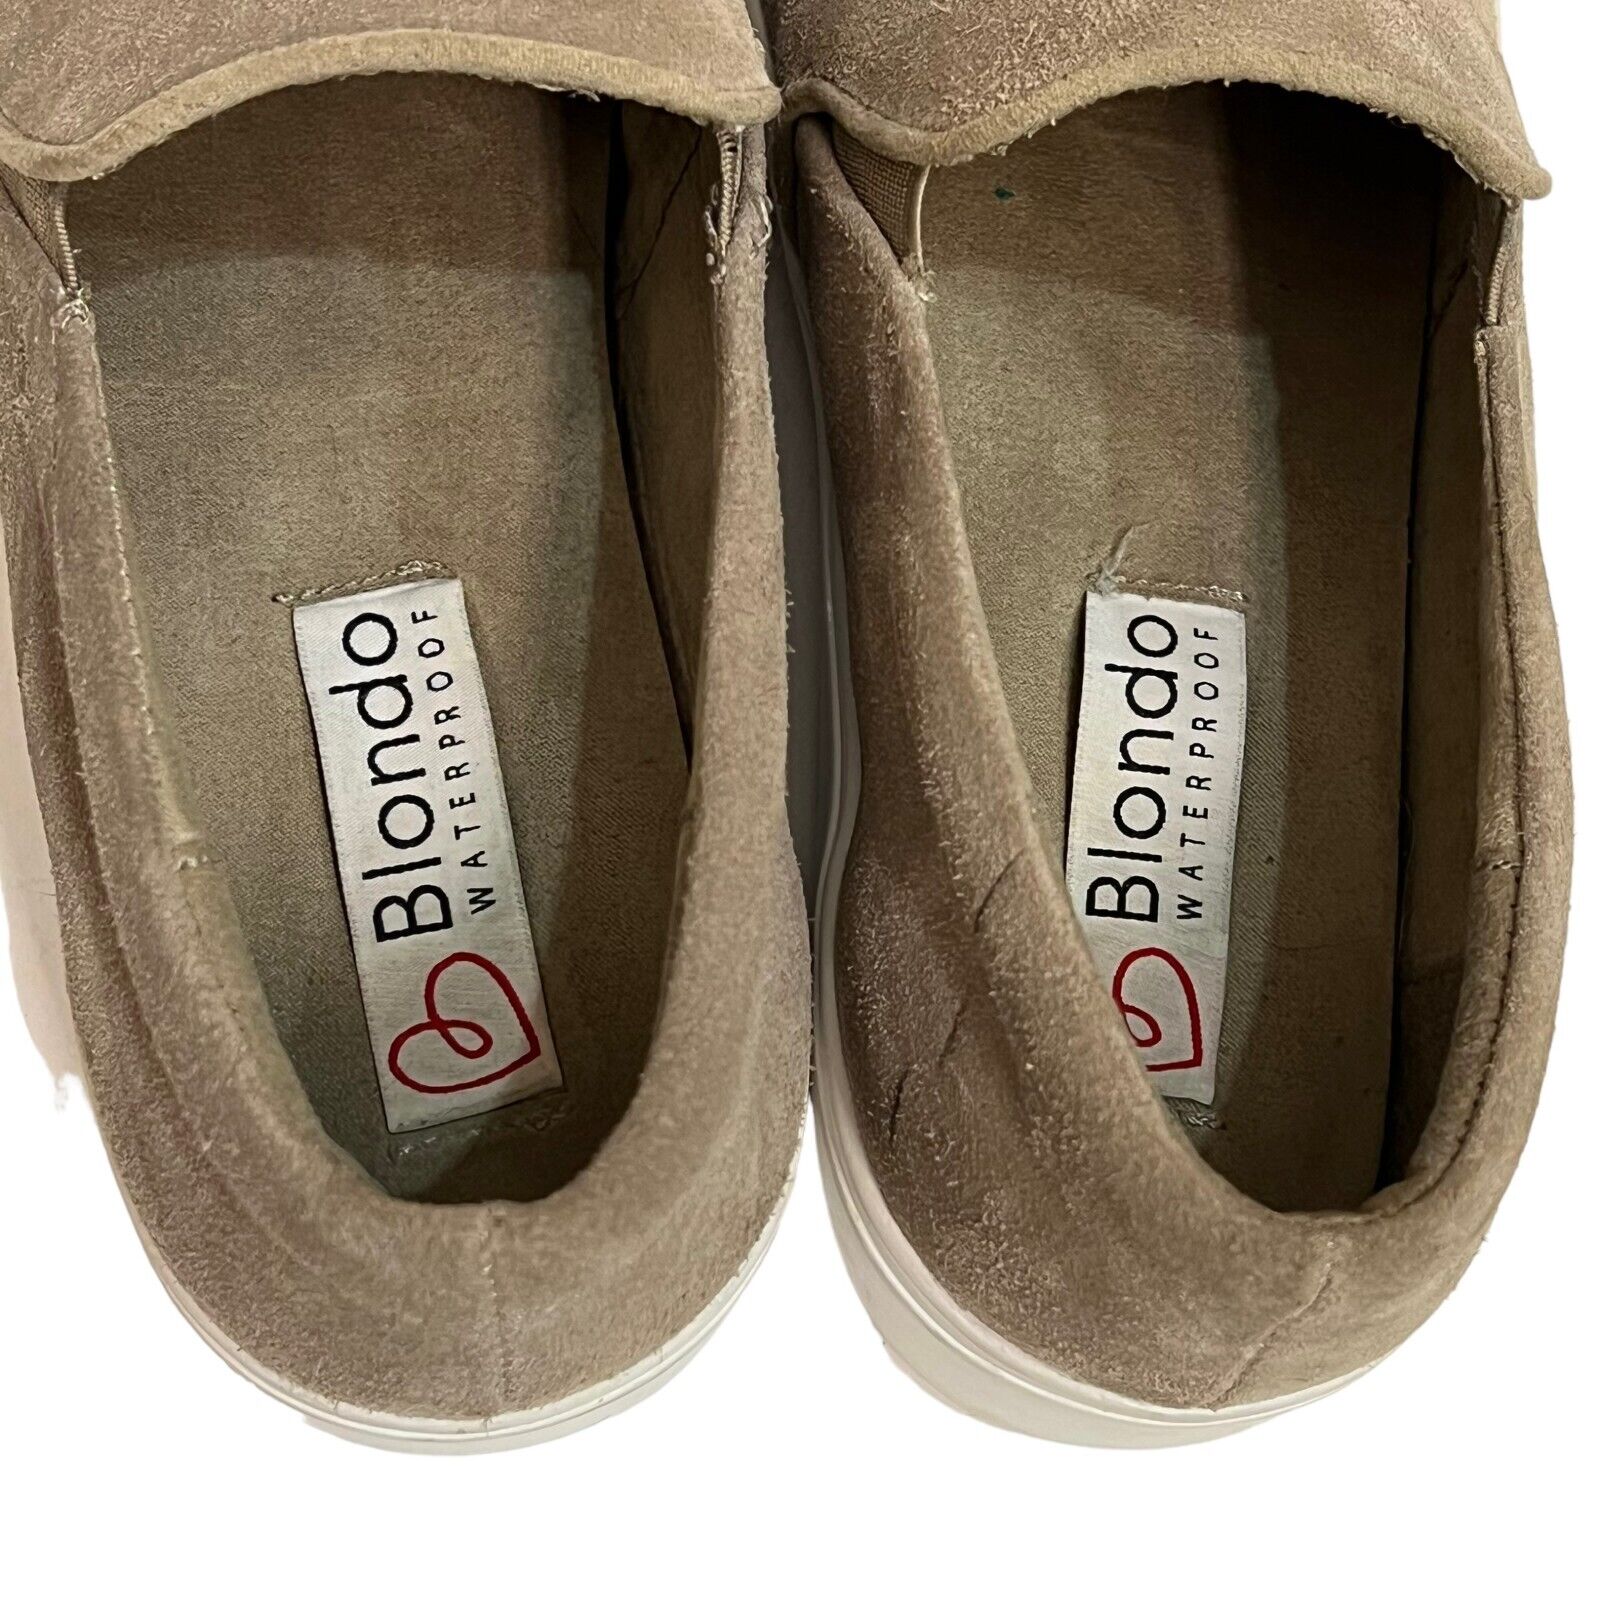 Blondo Gracie Waterproof Slip On Sneakers in Mushroom Suede Size 9